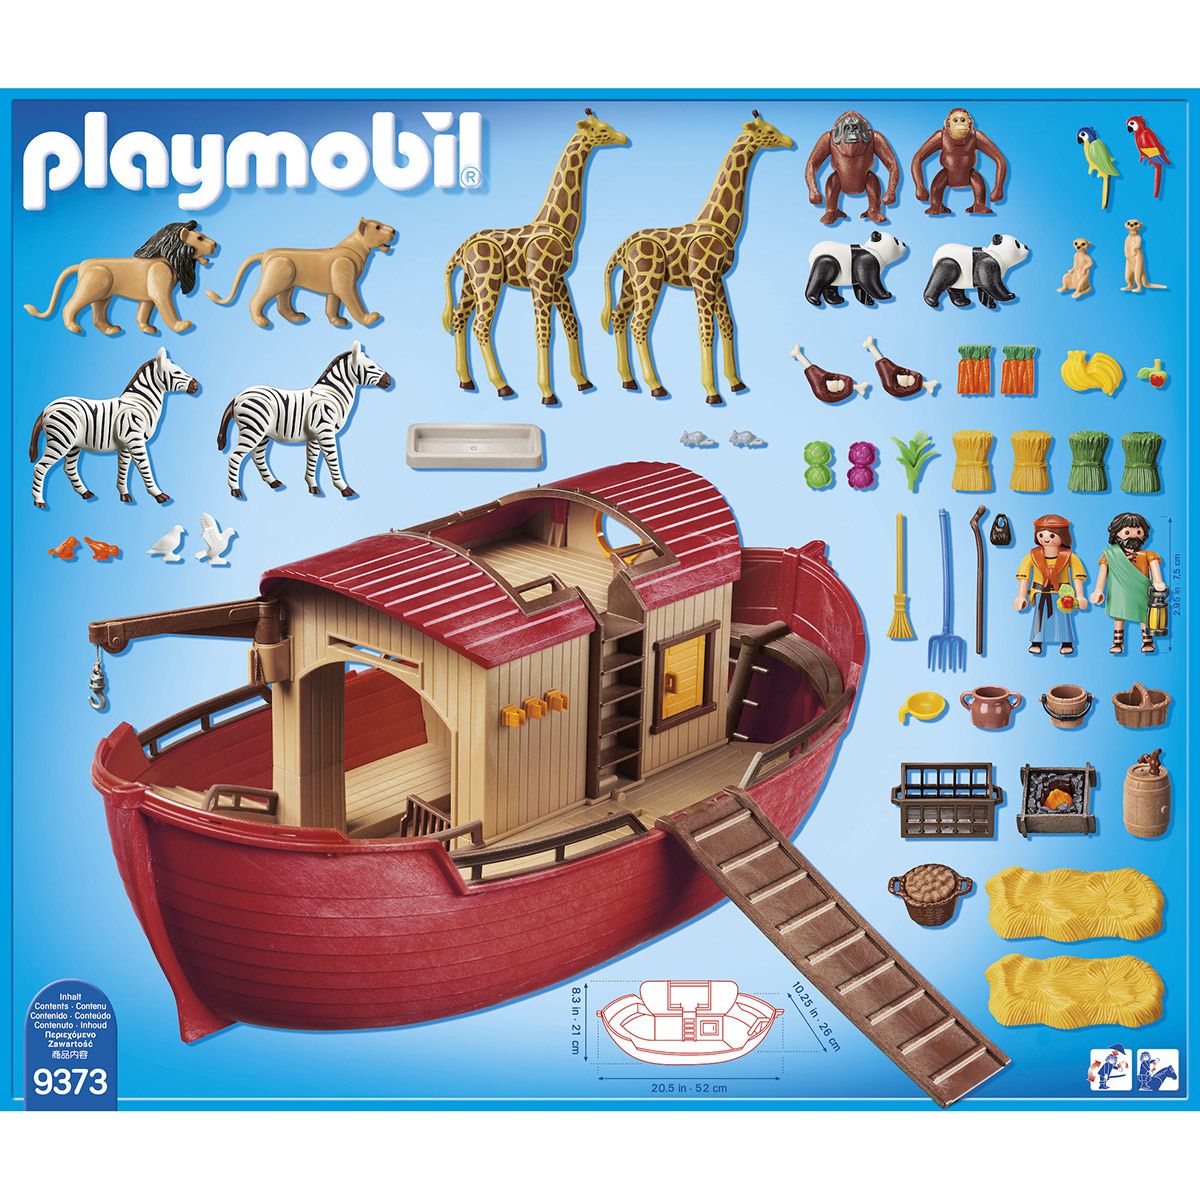 Arche de Noé transportable Playmobil 1.2.3. 6765 - La Grande Récré